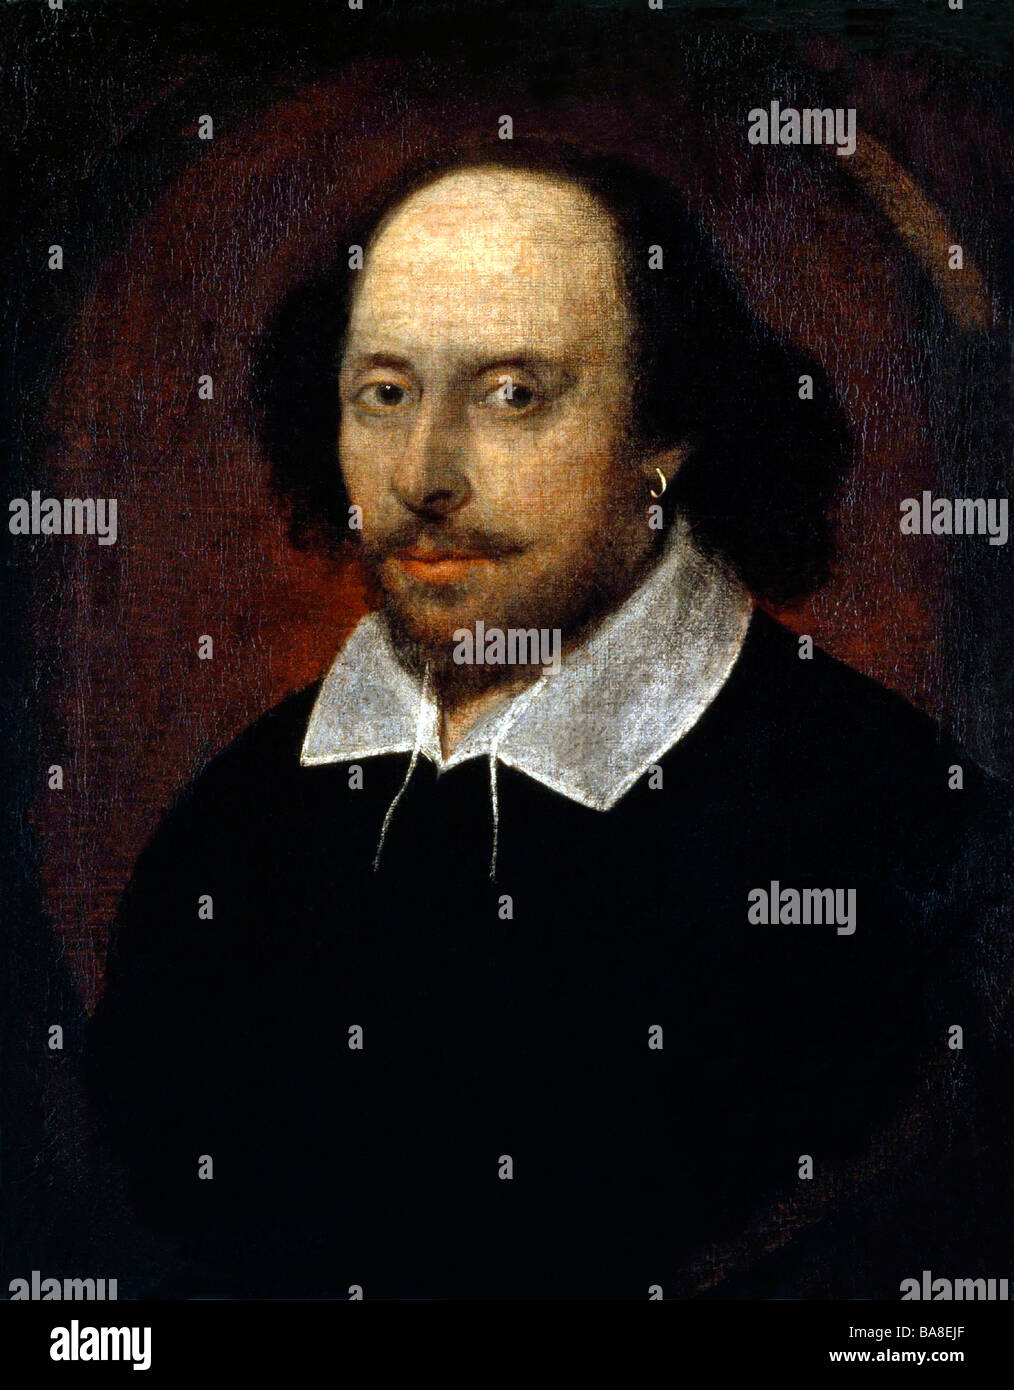 Portrait de l'auteur, dramaturge anglais William Shakespeare. Banque D'Images